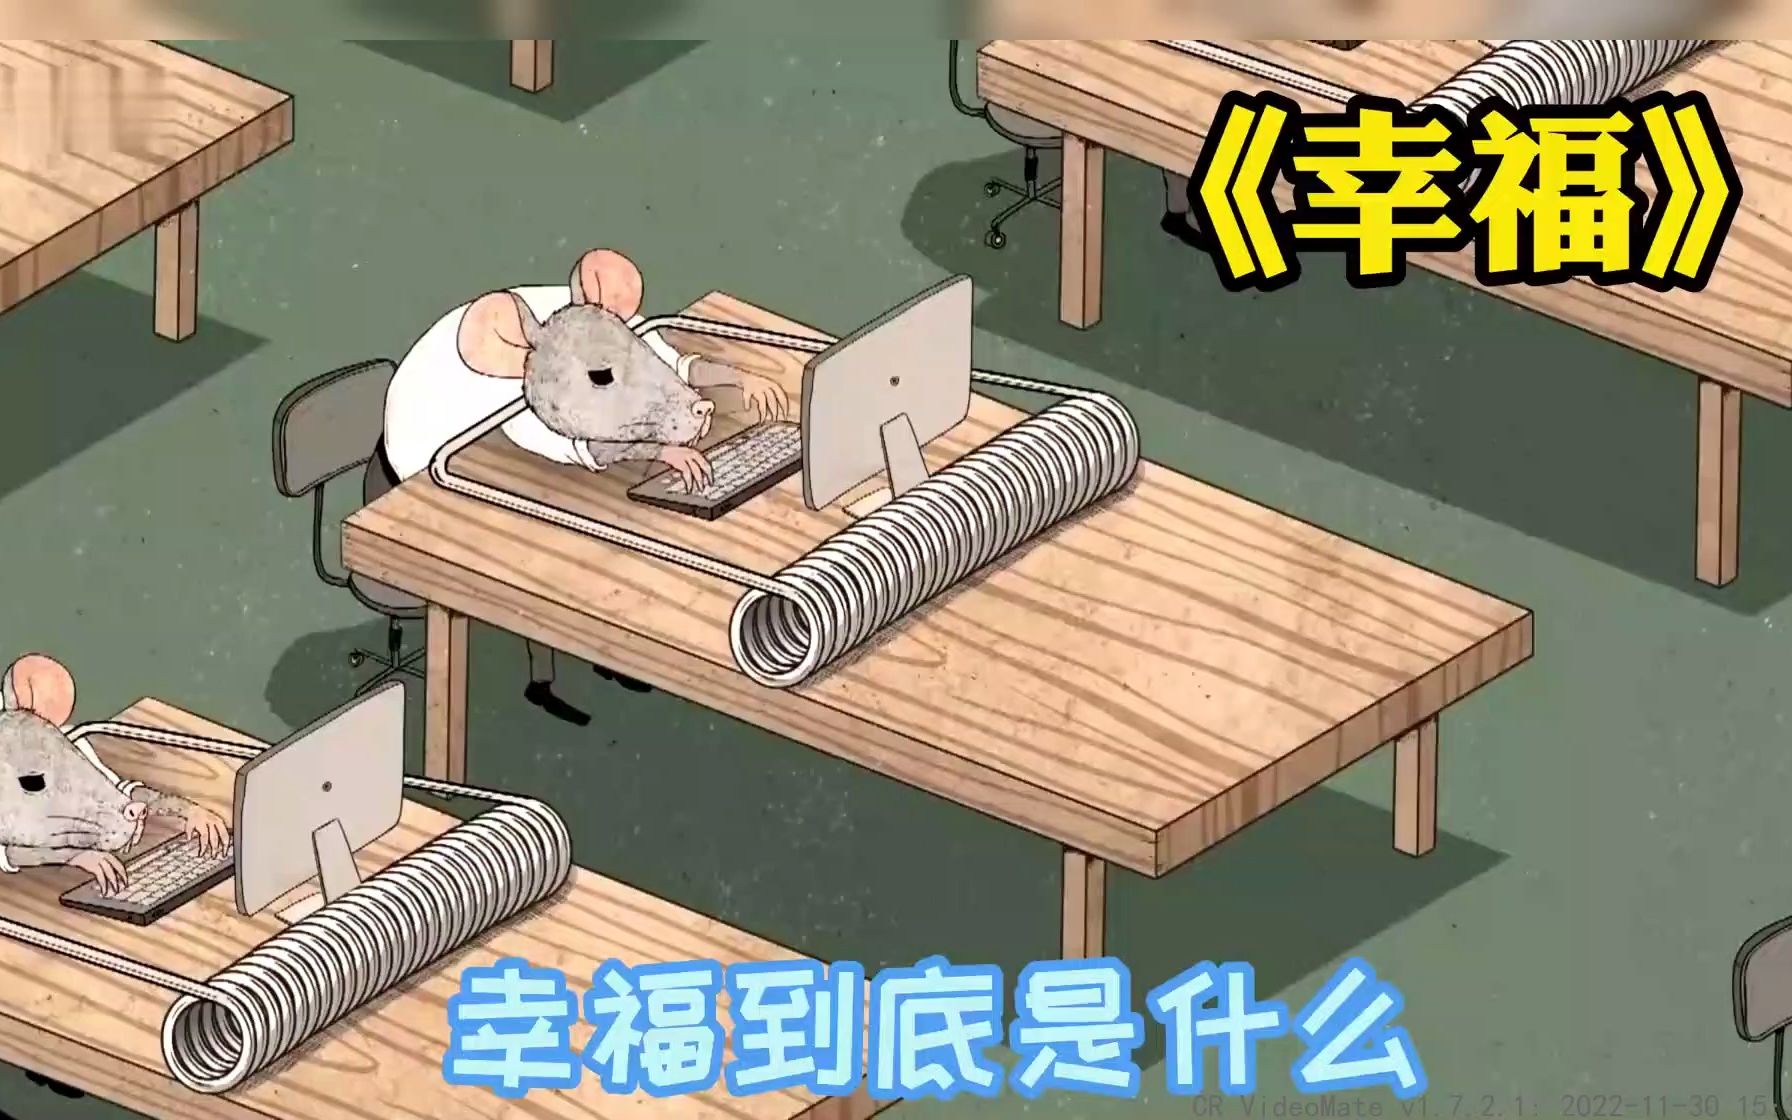 讽刺短片：幸福到底是什么，让这只老鼠来告诉你